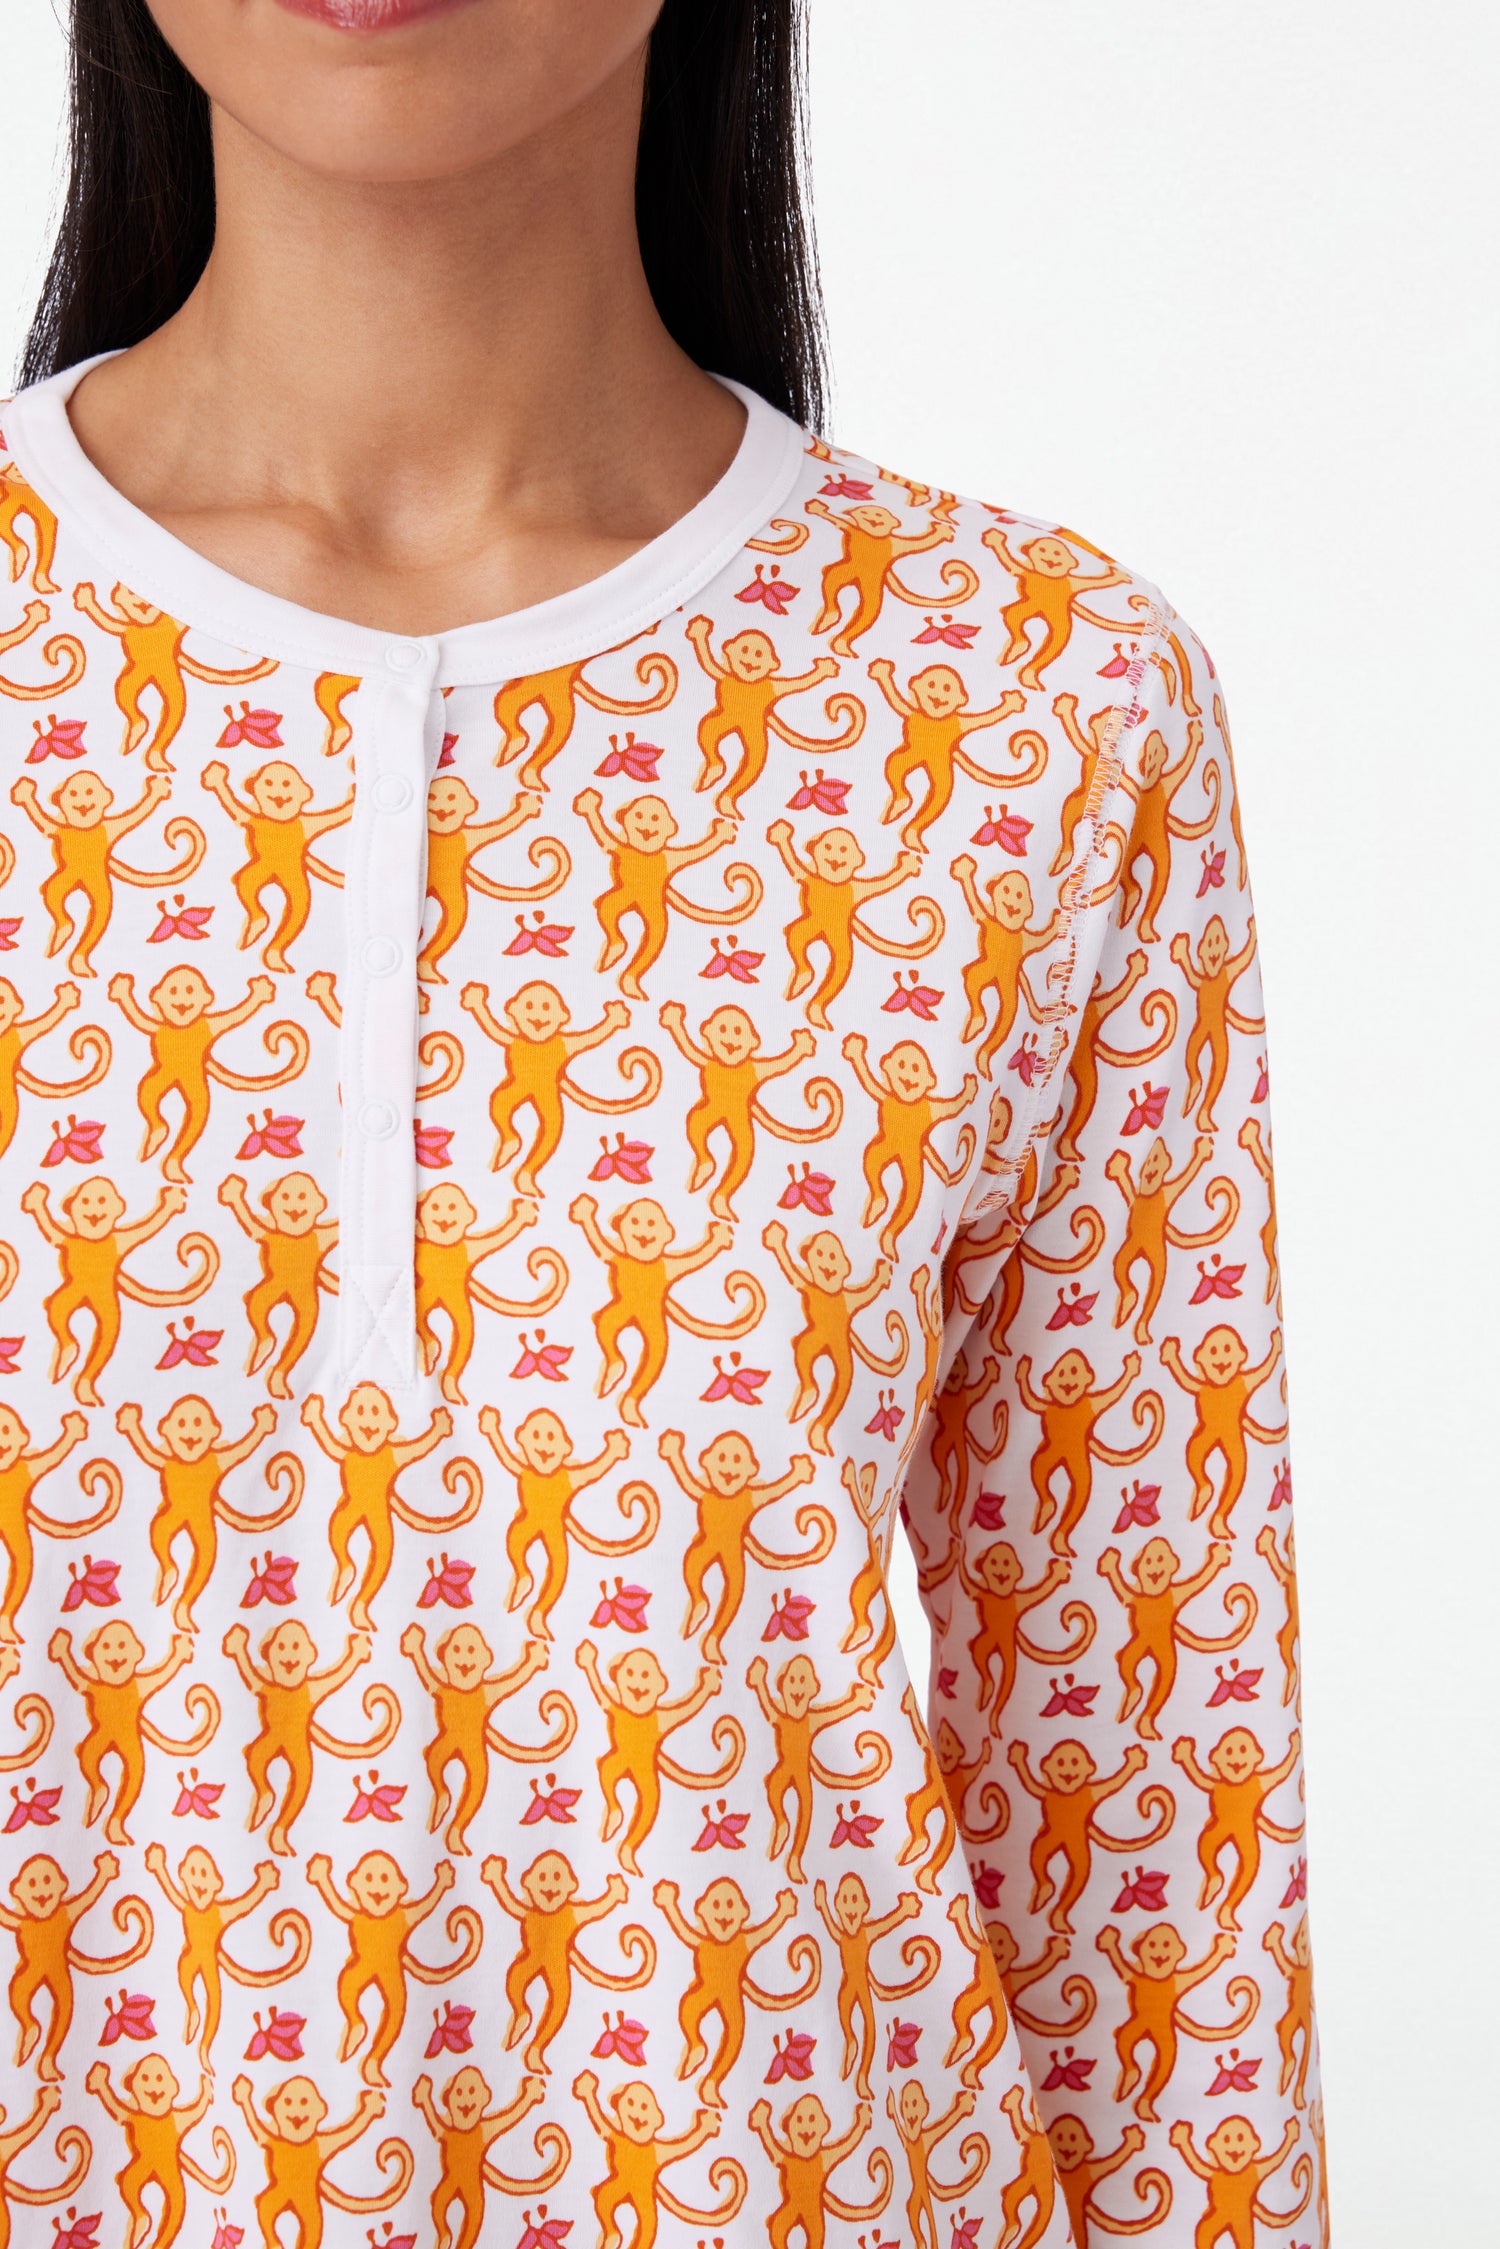 Roller Rabbit Orange Monkey Pajamas